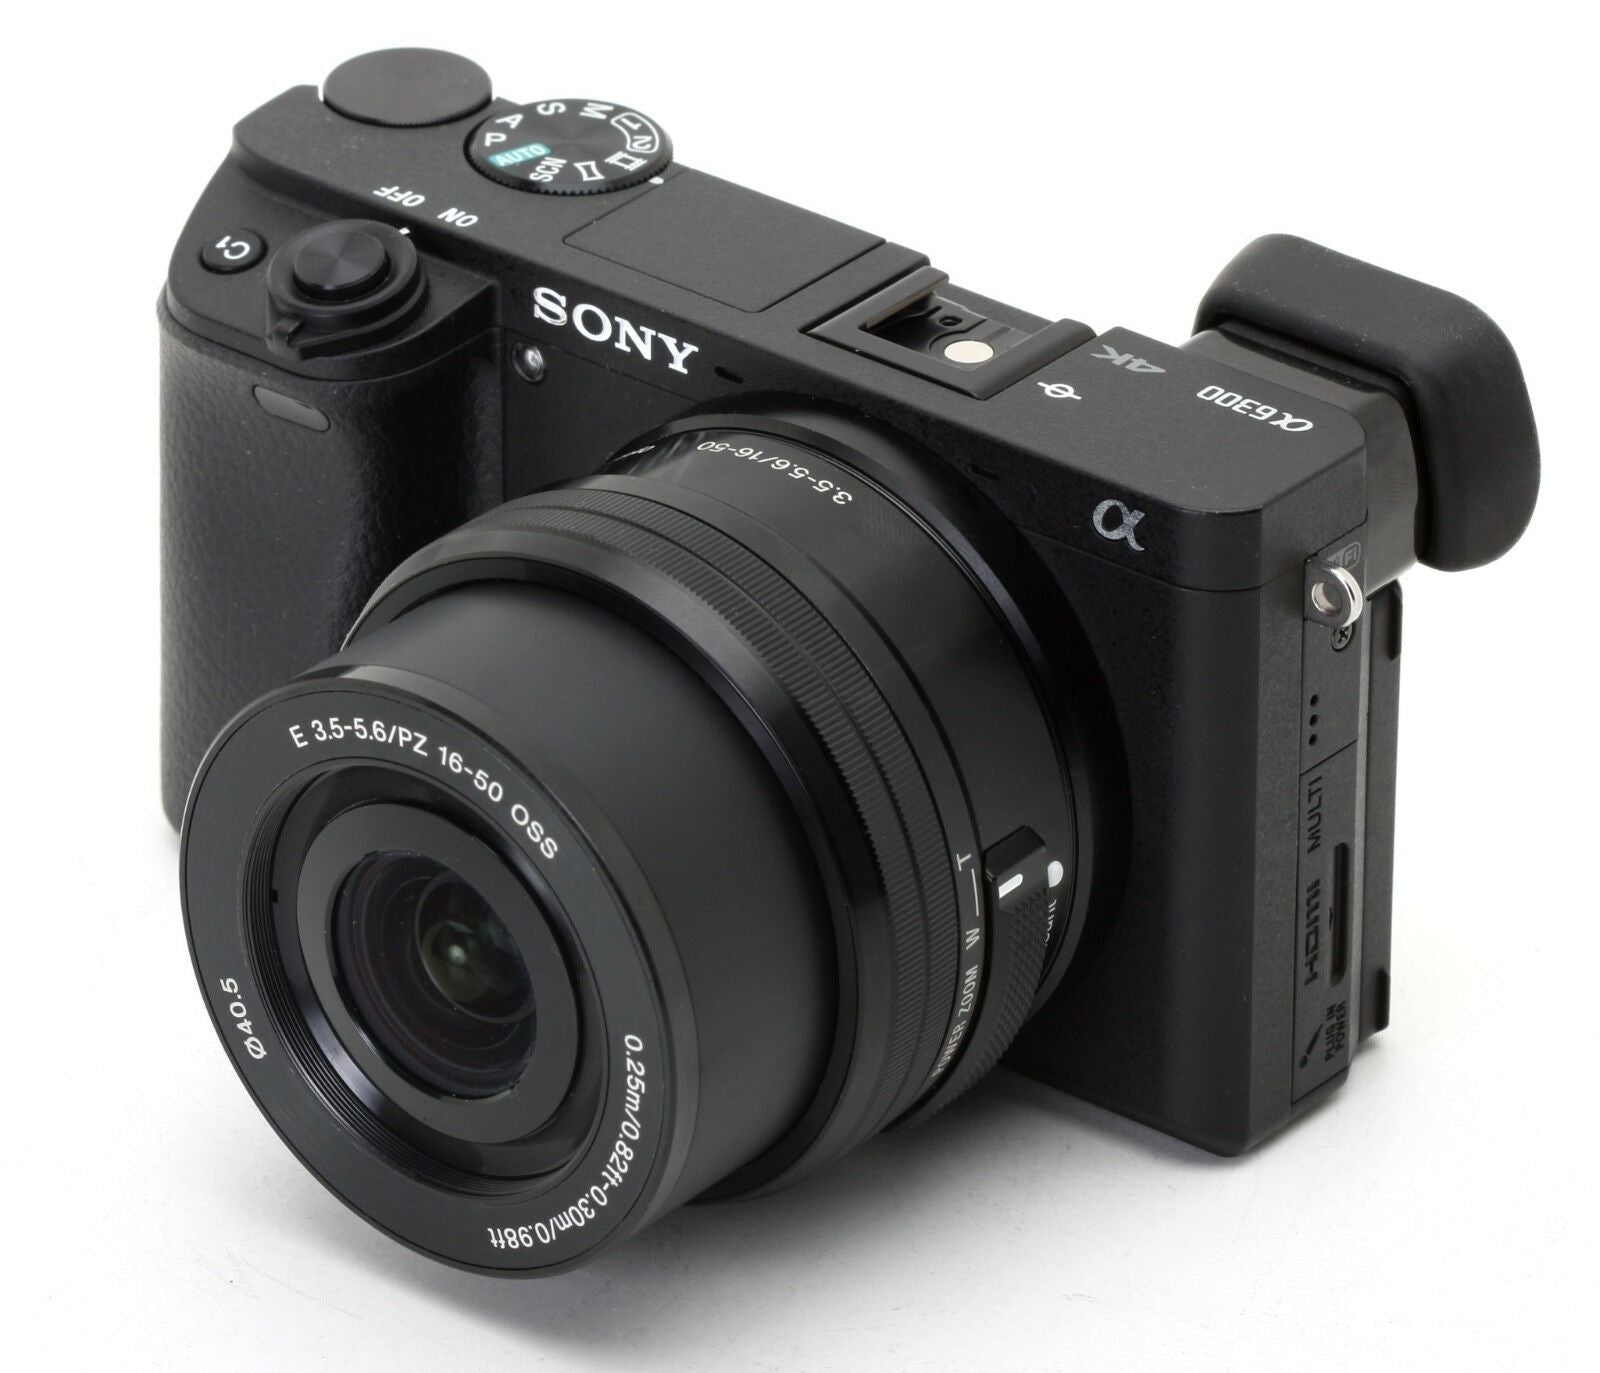 Sony Alpha a6000 Mirrorless Digital Camera - Black w/16-50mm Lens + 16GB & Case Bundle